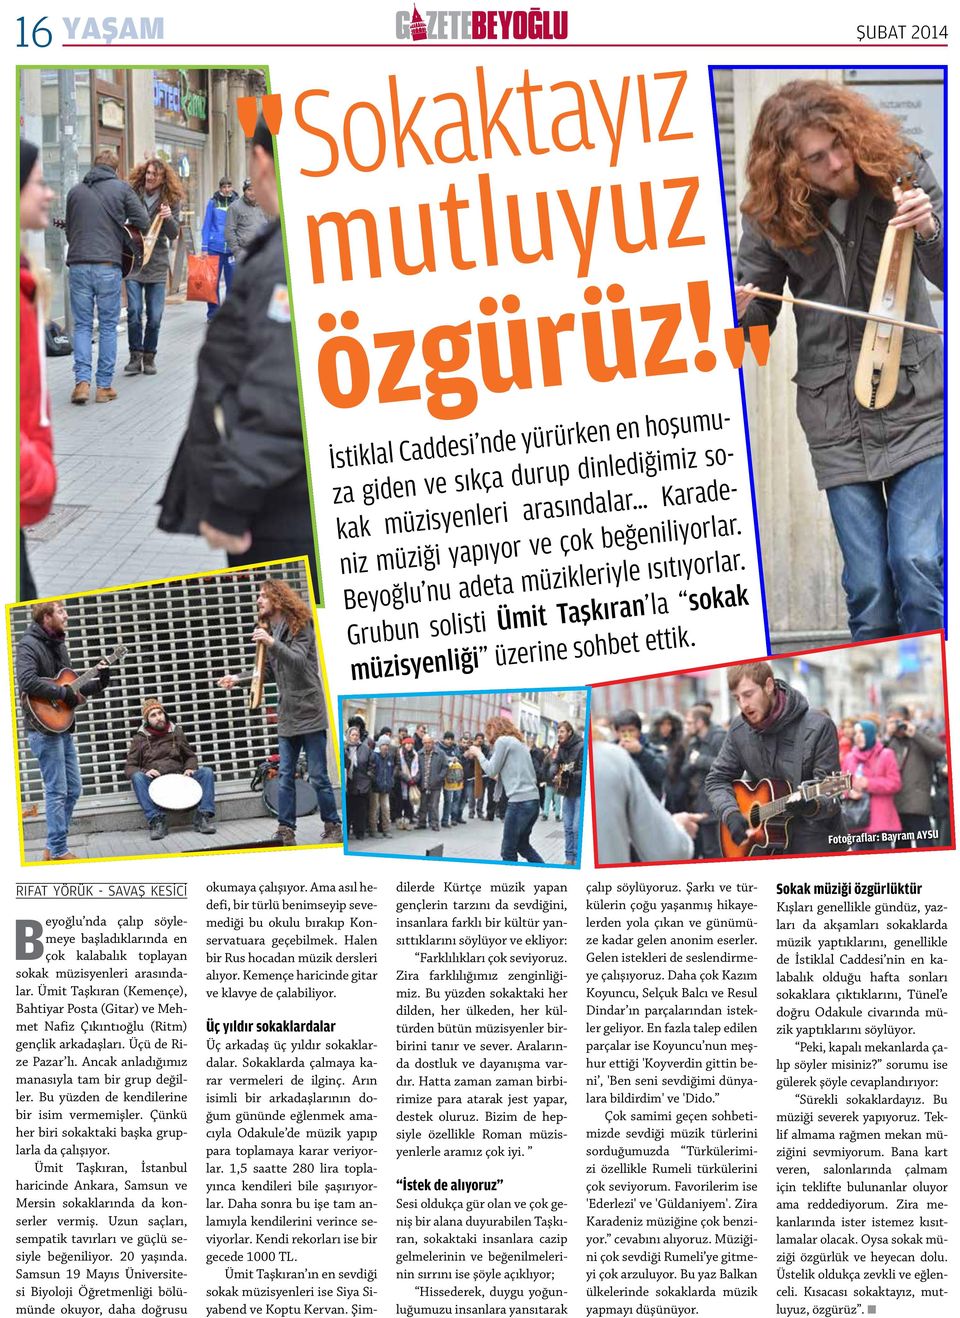 ŞUBAT 2014 Fotoğraflar: Bayram AYSU RIFAT YÖRÜK - SAVAŞ KESİCİ Beyoğlu nda çalıp söylemeye başladıklarında en çok kalabalık toplayan sokak müzisyenleri arasındalar.